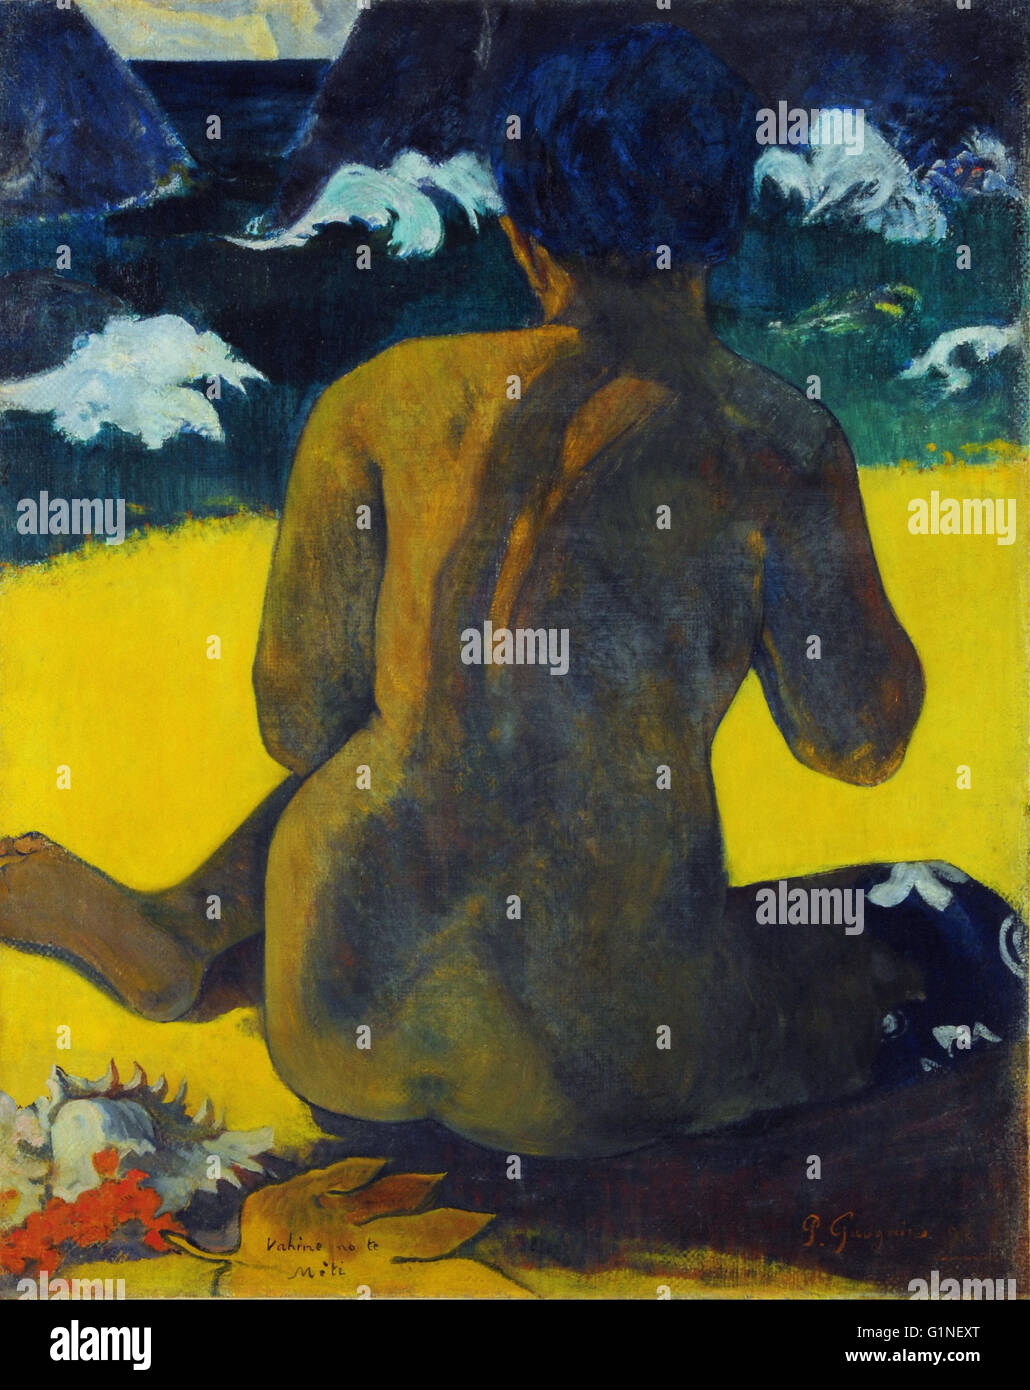 Gauguin, Paul - Vahine no te miti (Femme a la mer) (Mujer del mar) - Museo Nacional de Bellas Artes de Buenos Aires. Foto de stock